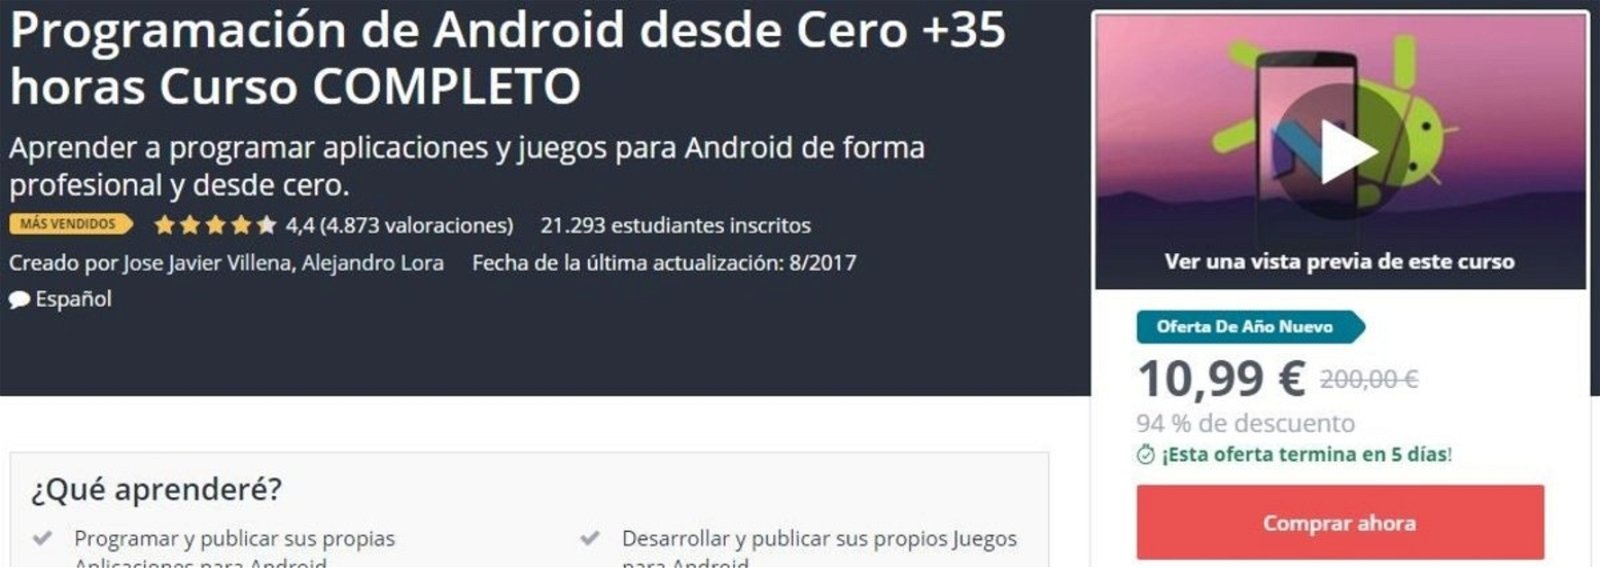 Programación de Android desde Cero